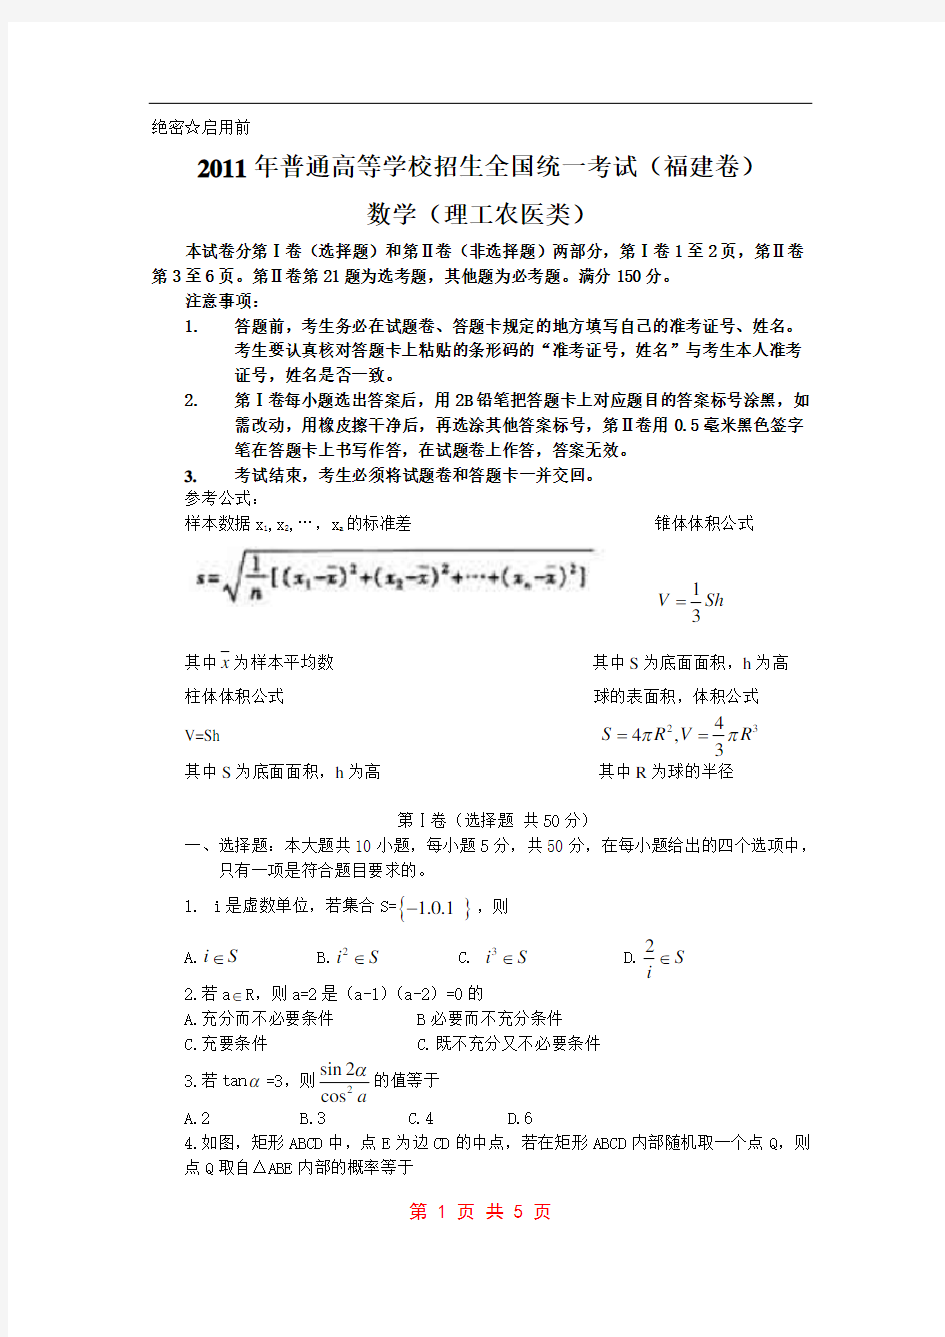 2011年高考试题(福建卷理科数学)